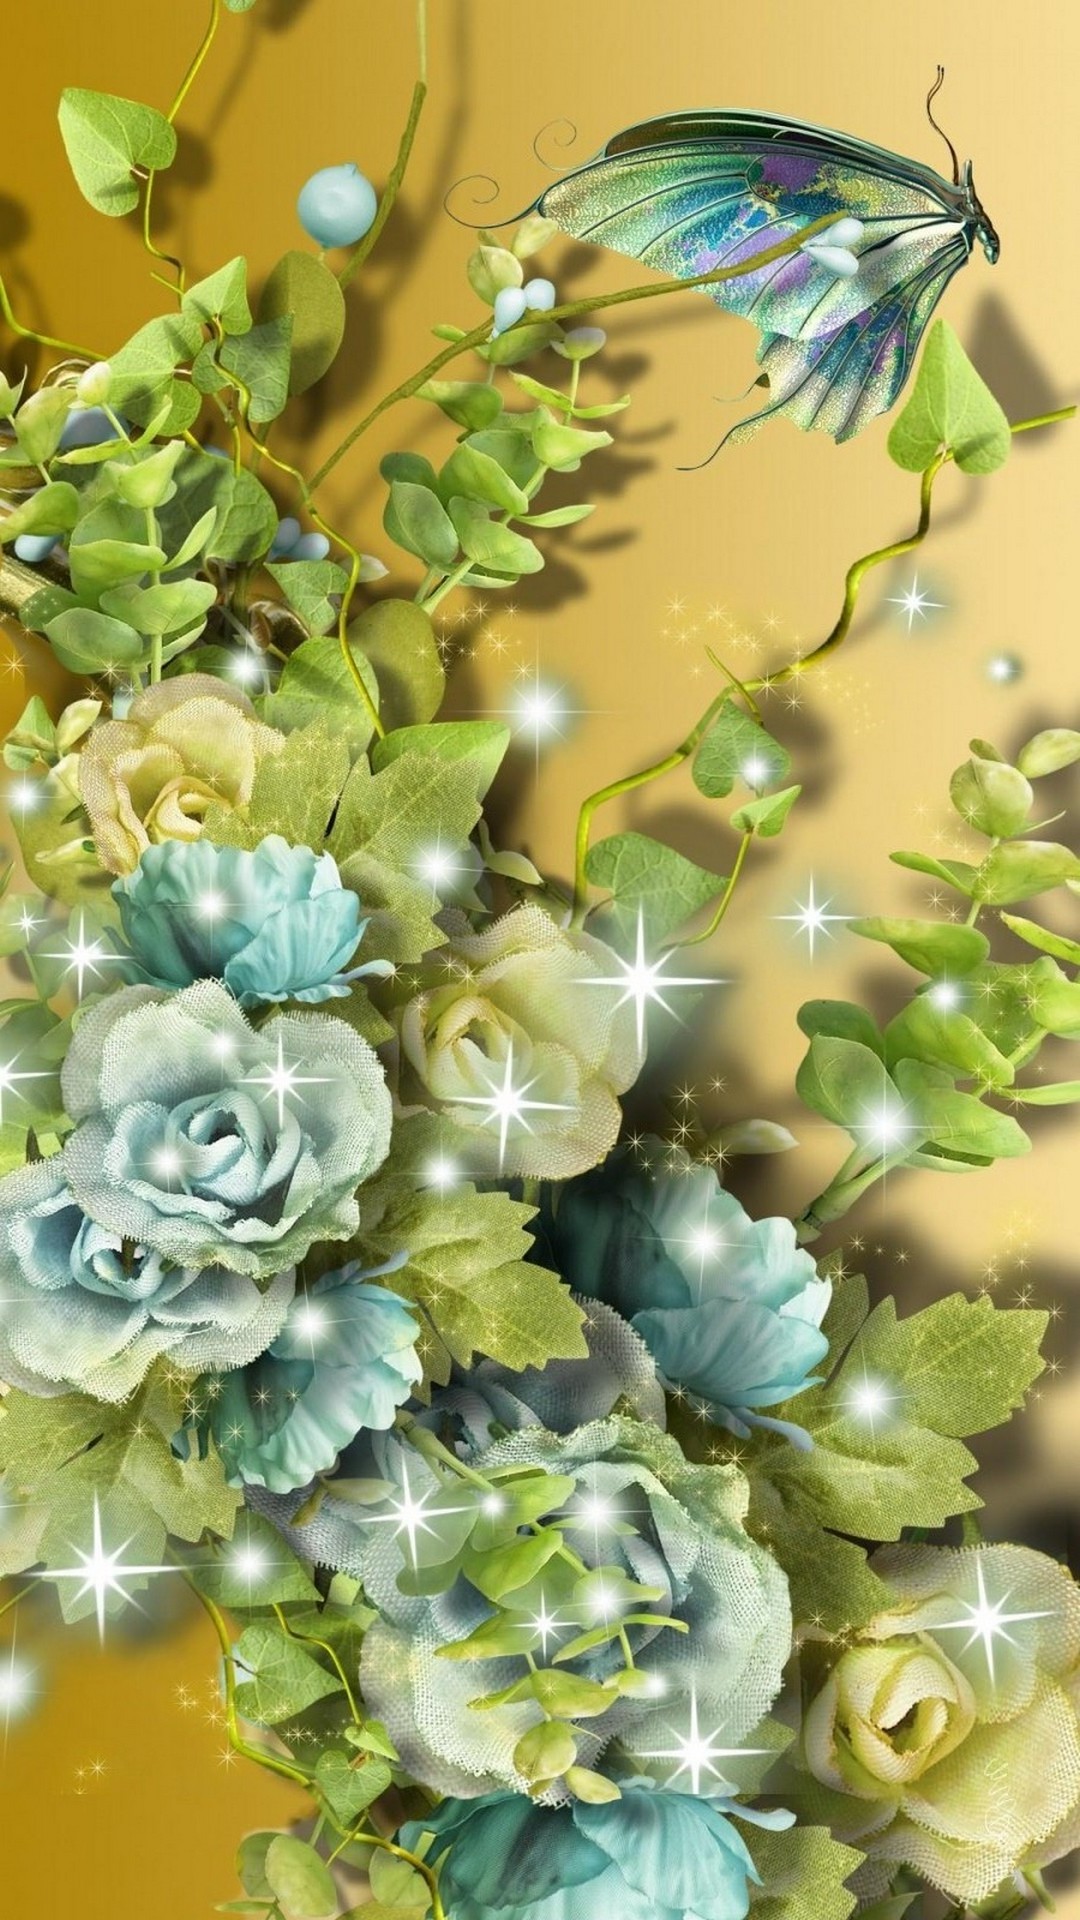 3D Flower Cellphone Wallpaper Resolution 1080x1920